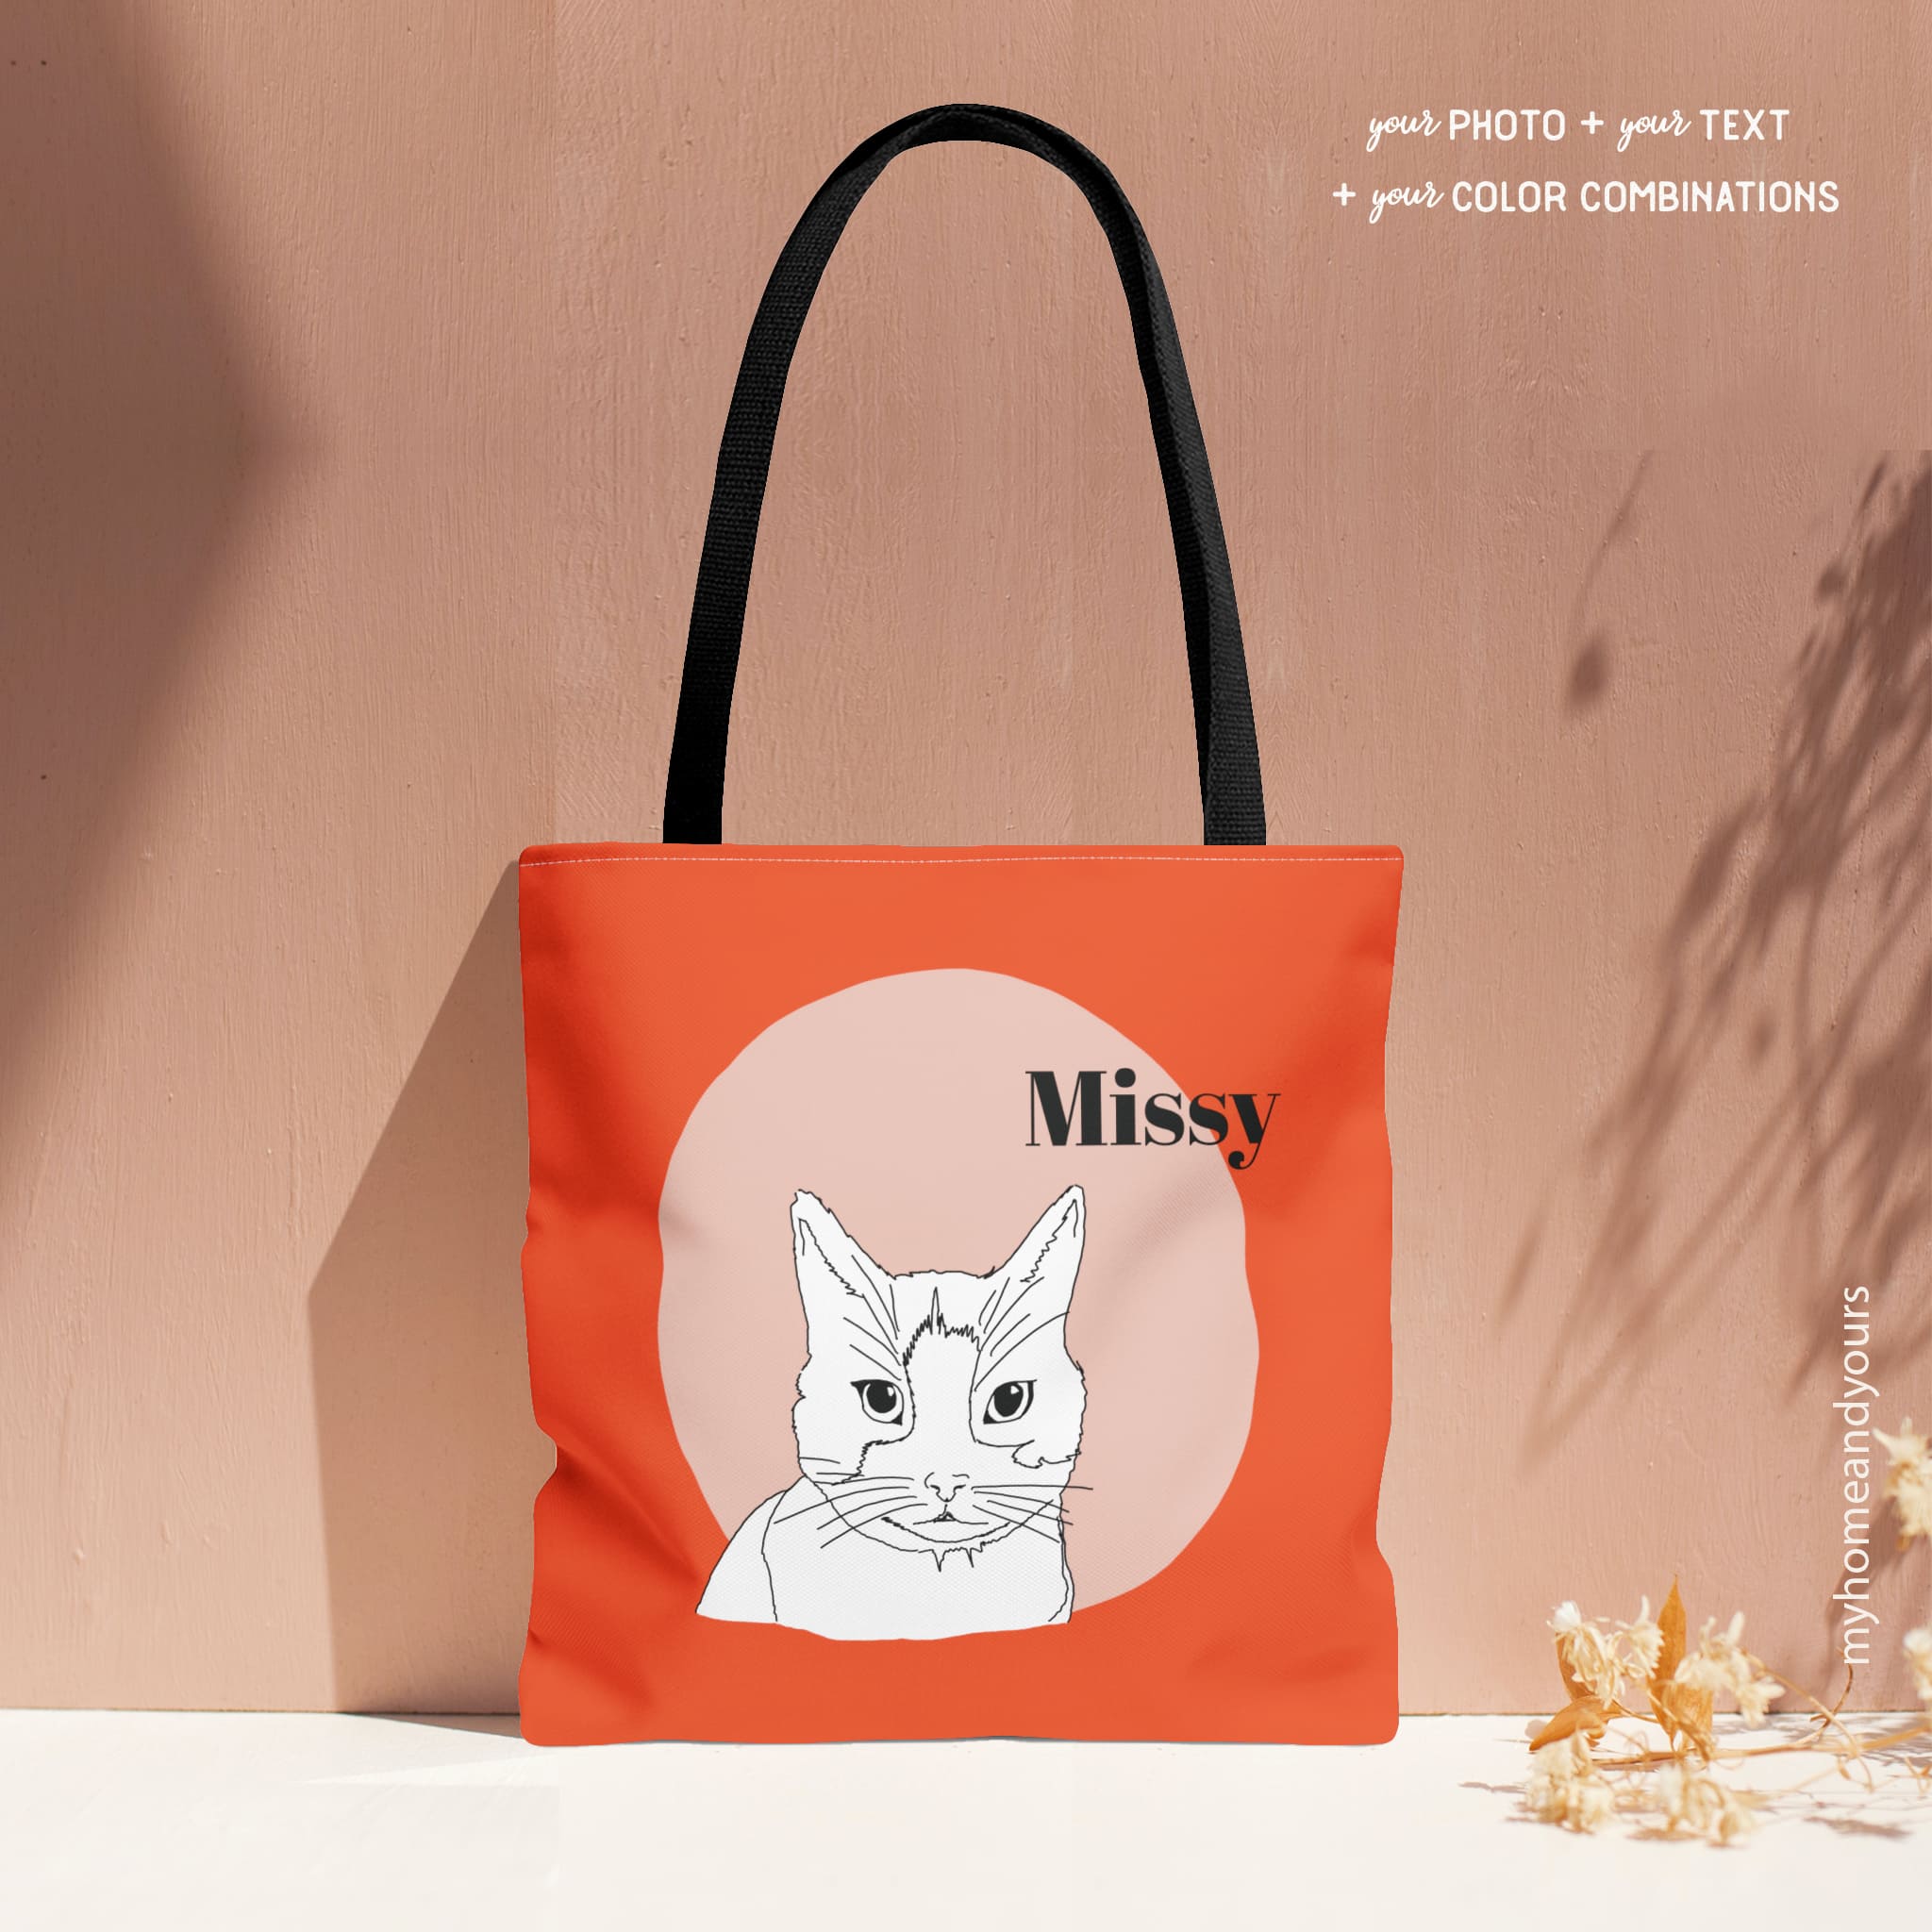 custom cat portrait tote bag in line art illustration on color blocking background